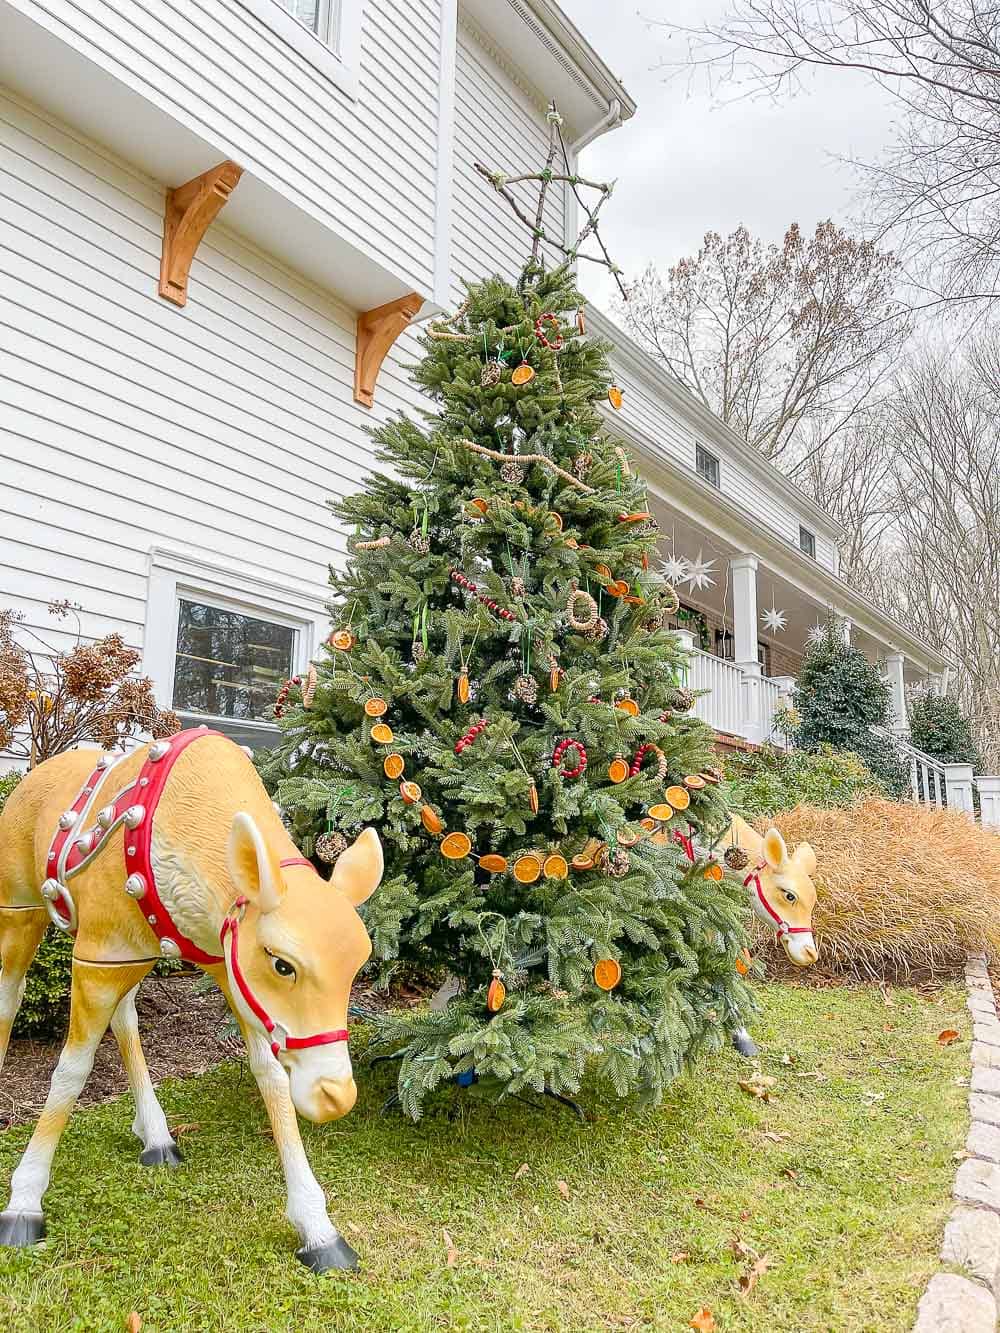 edible ornament bird and animal christmas tree